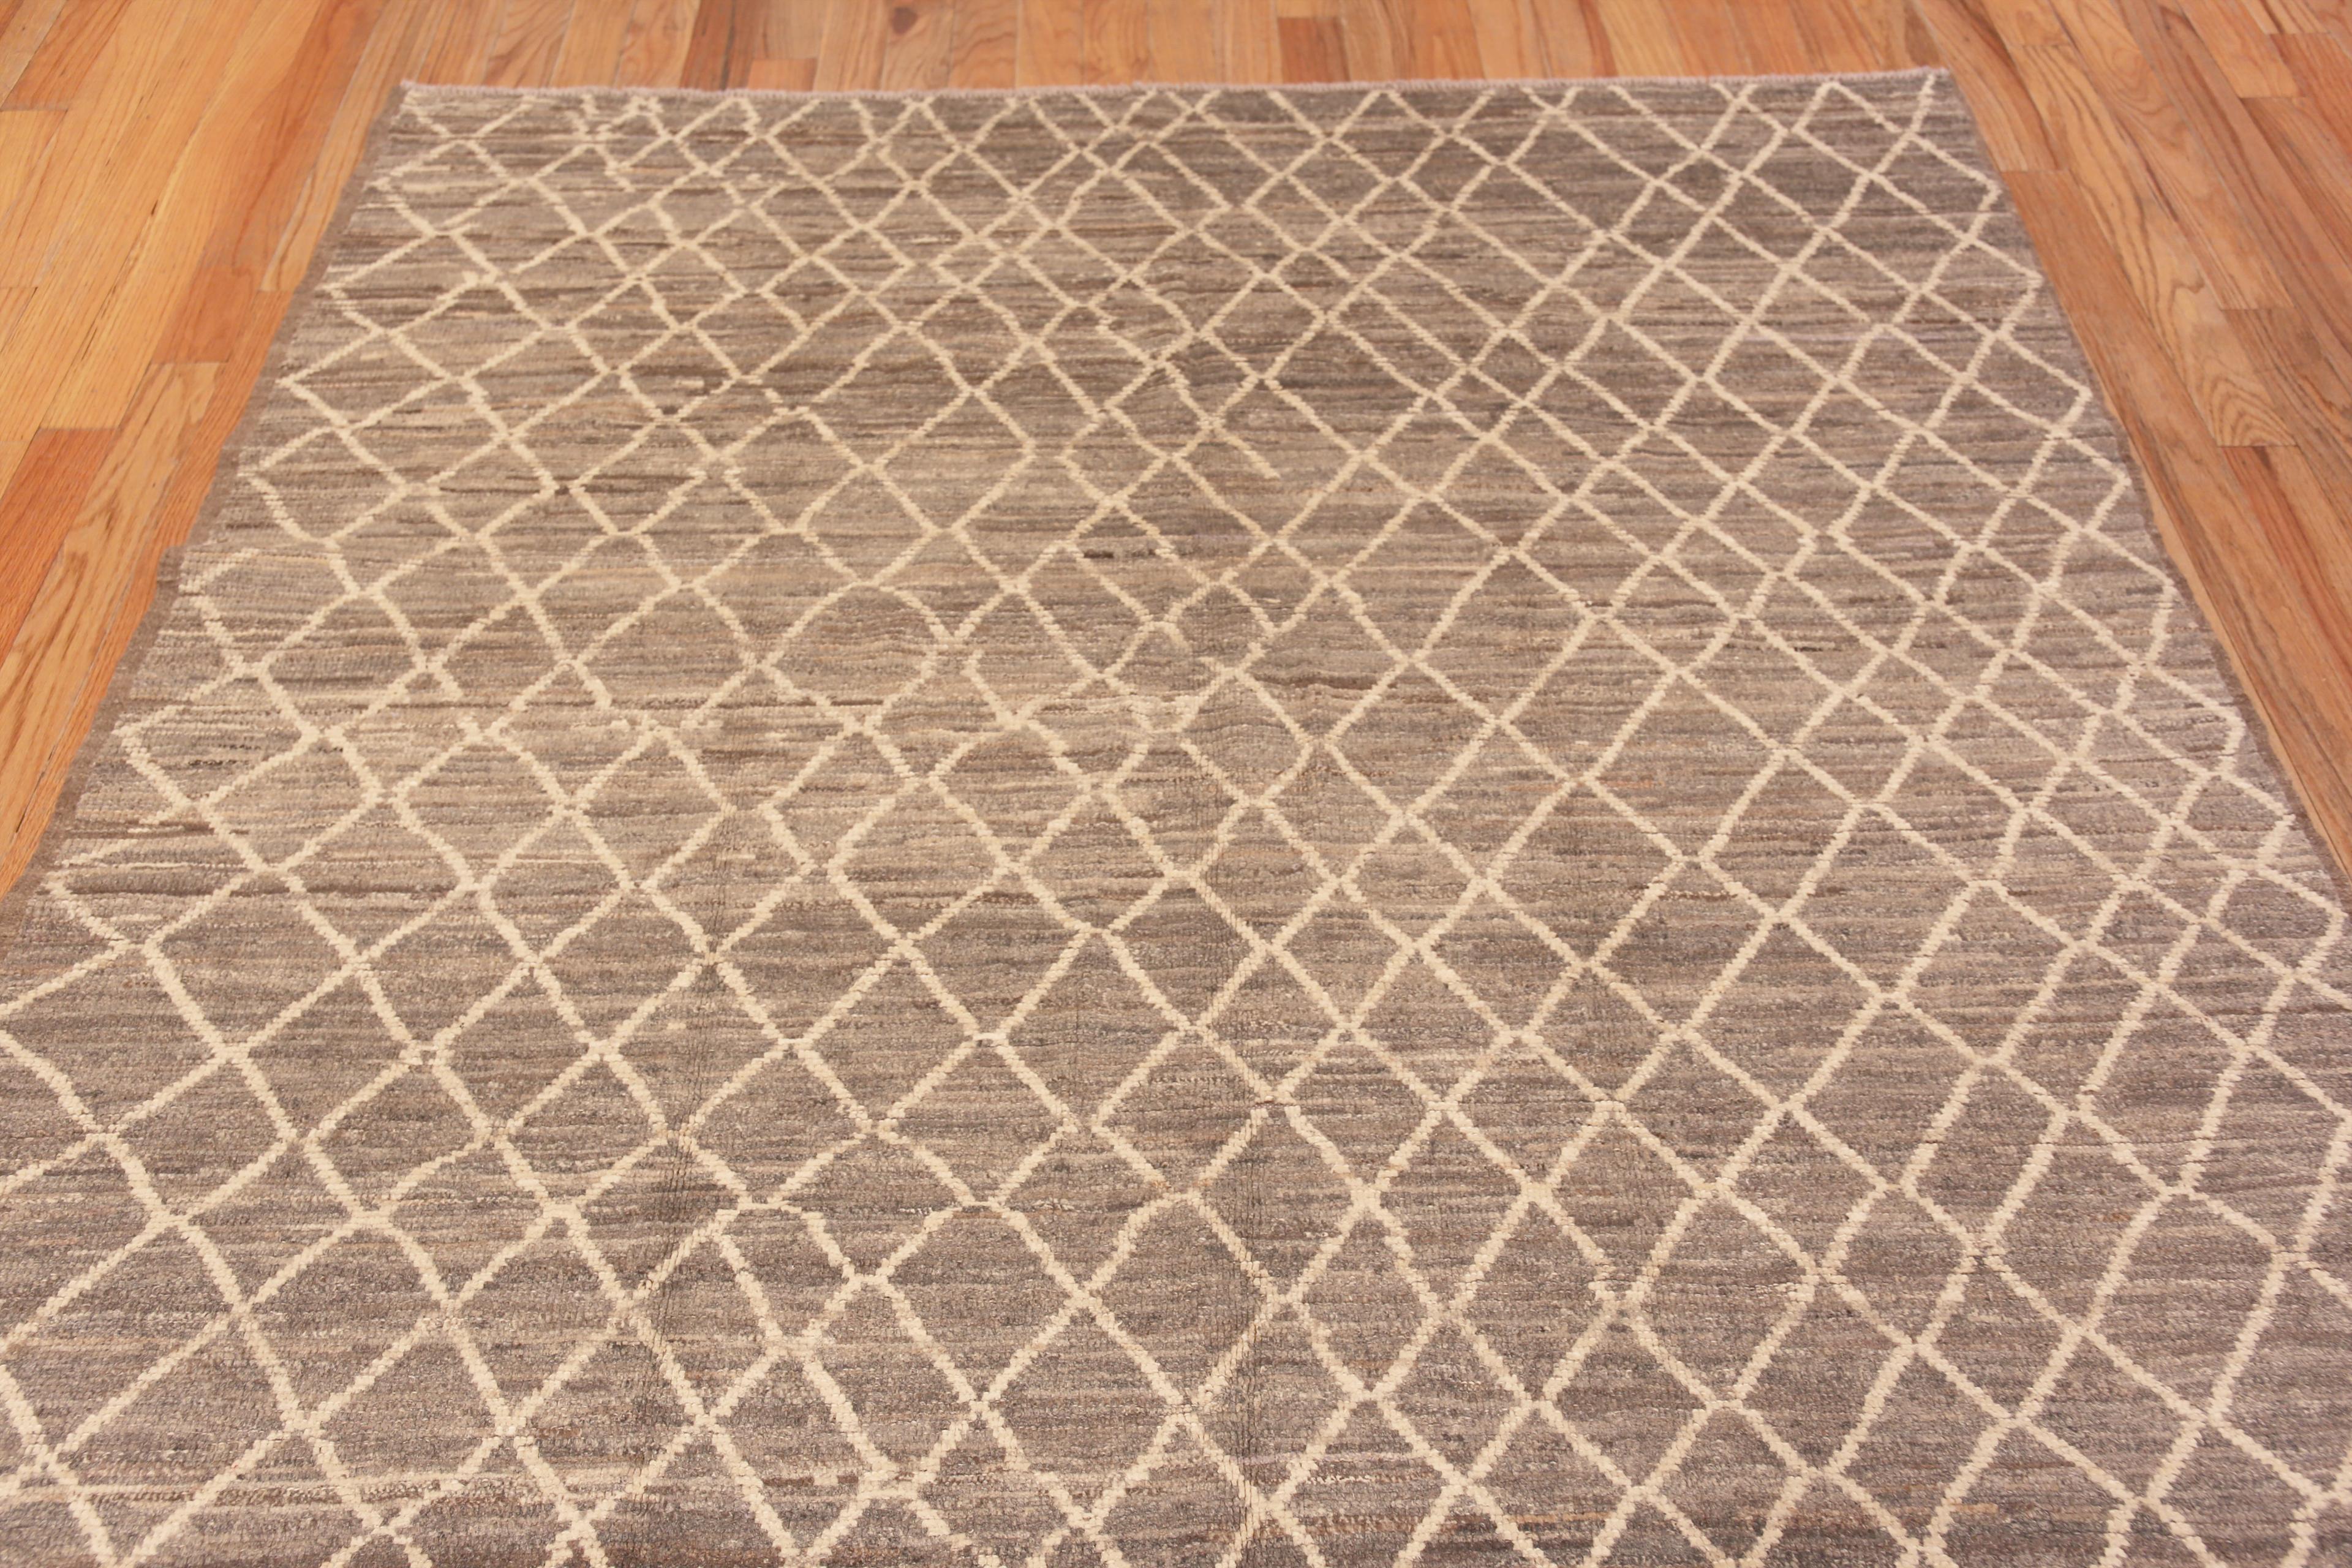 Ein hochdekorativer Modern Room Size Grey Abrash Background Ivory Tribal Geometric Honeycomb Pattern Area Rug, Country of Origin: Zentralasien, CIRCA Datum: Moderner Teppich 